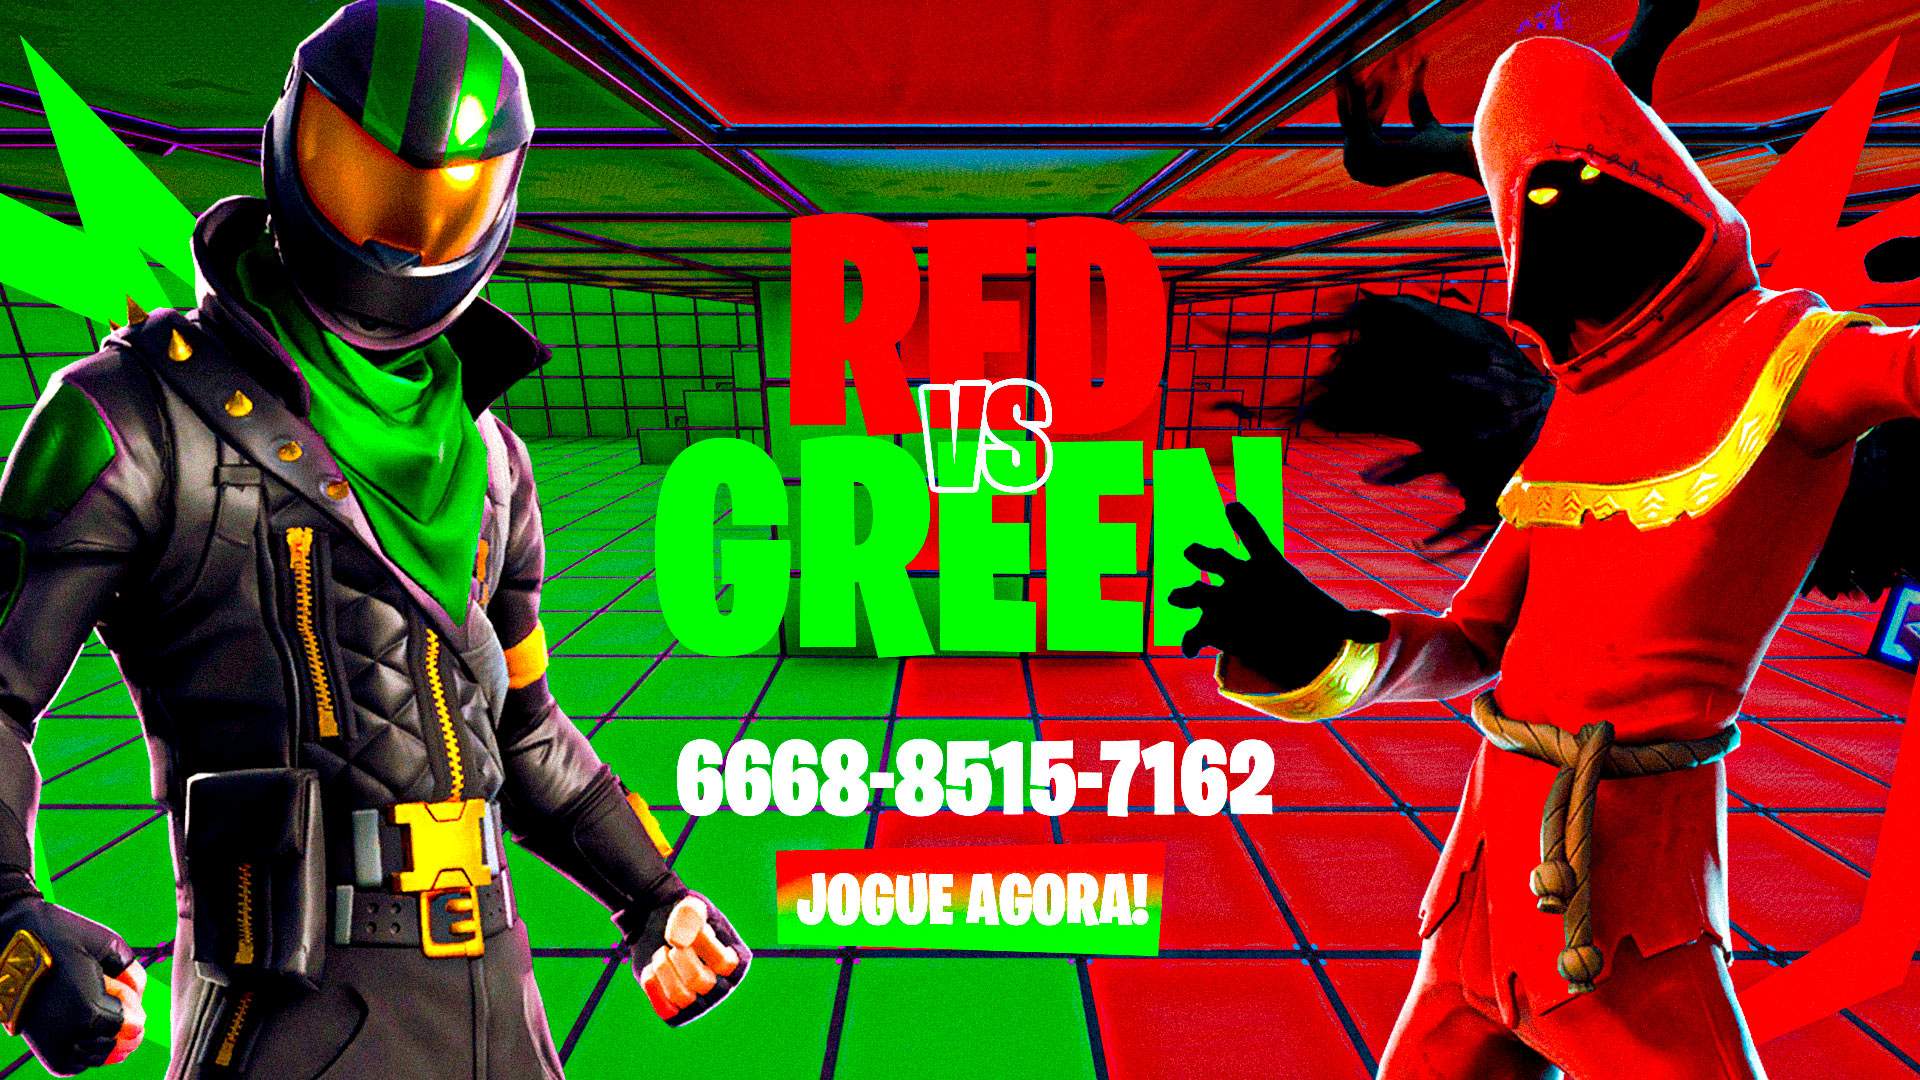 RED VS GREEN PRO 16 VS 16